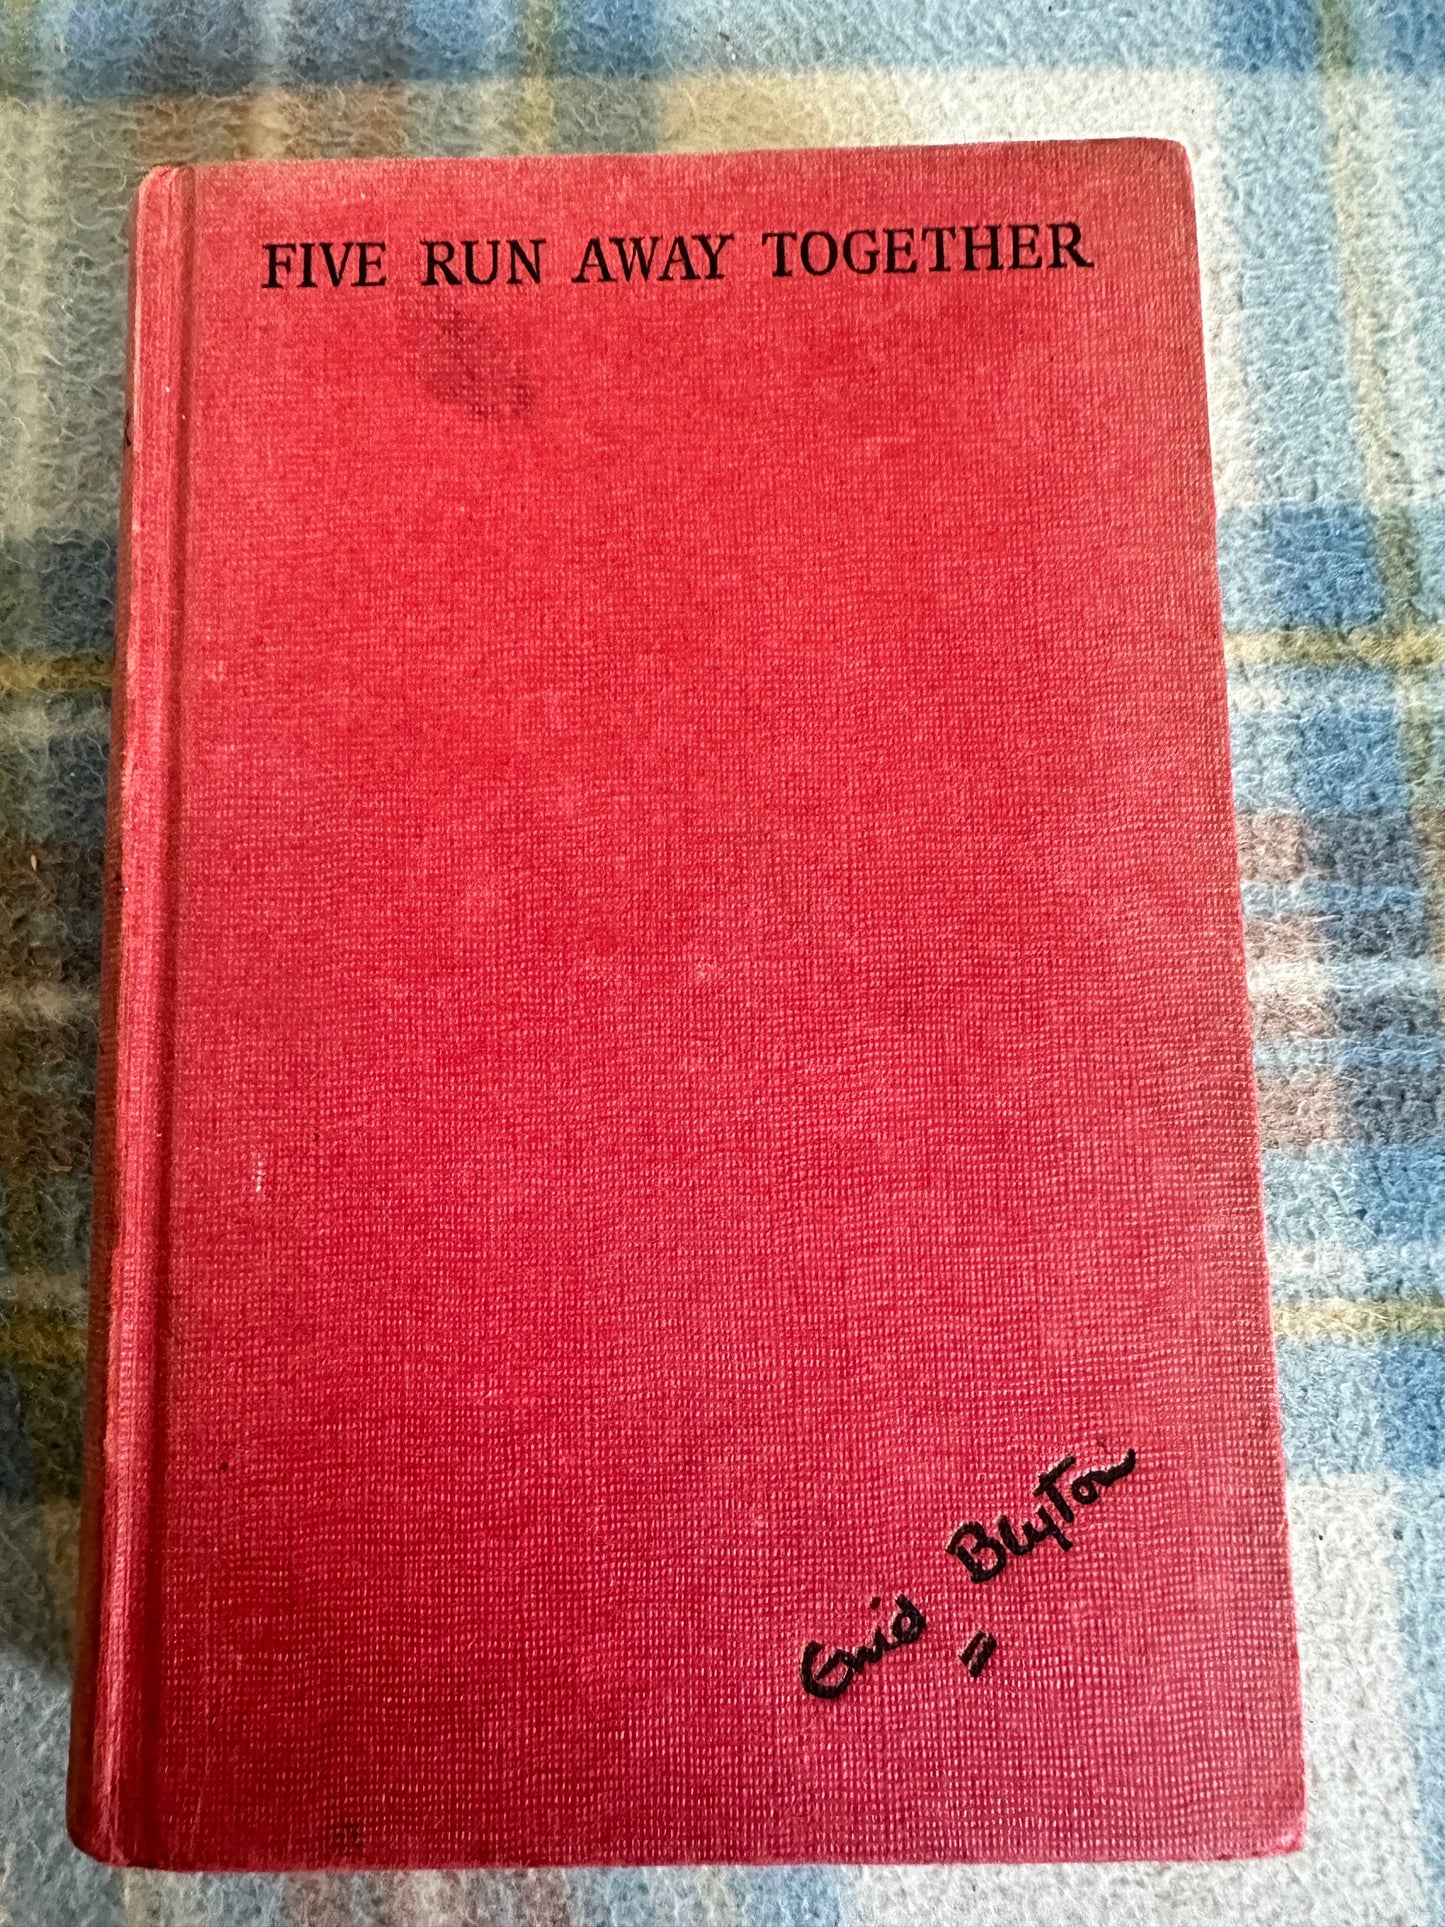 1963 Five Run Away Together - Enid Blyton(Eileen Soper illustration) Hodder & Stoughton)